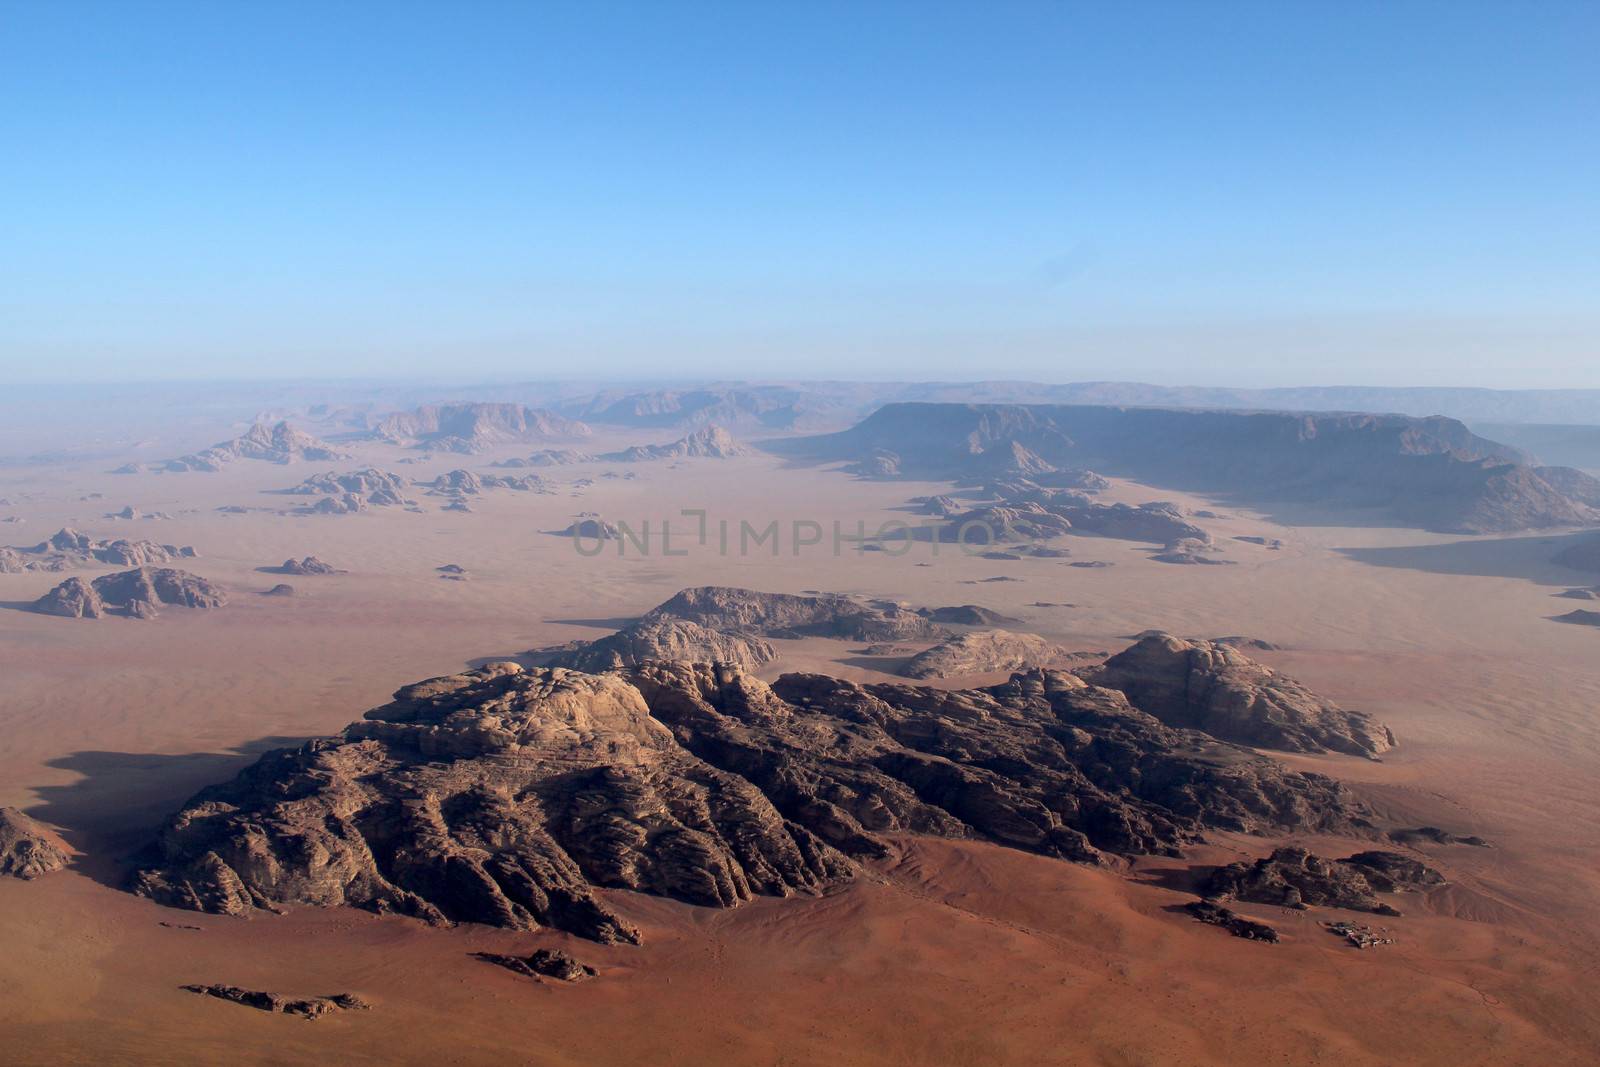 Wadi Rum Desert beautiful landscape from above. Jordan.